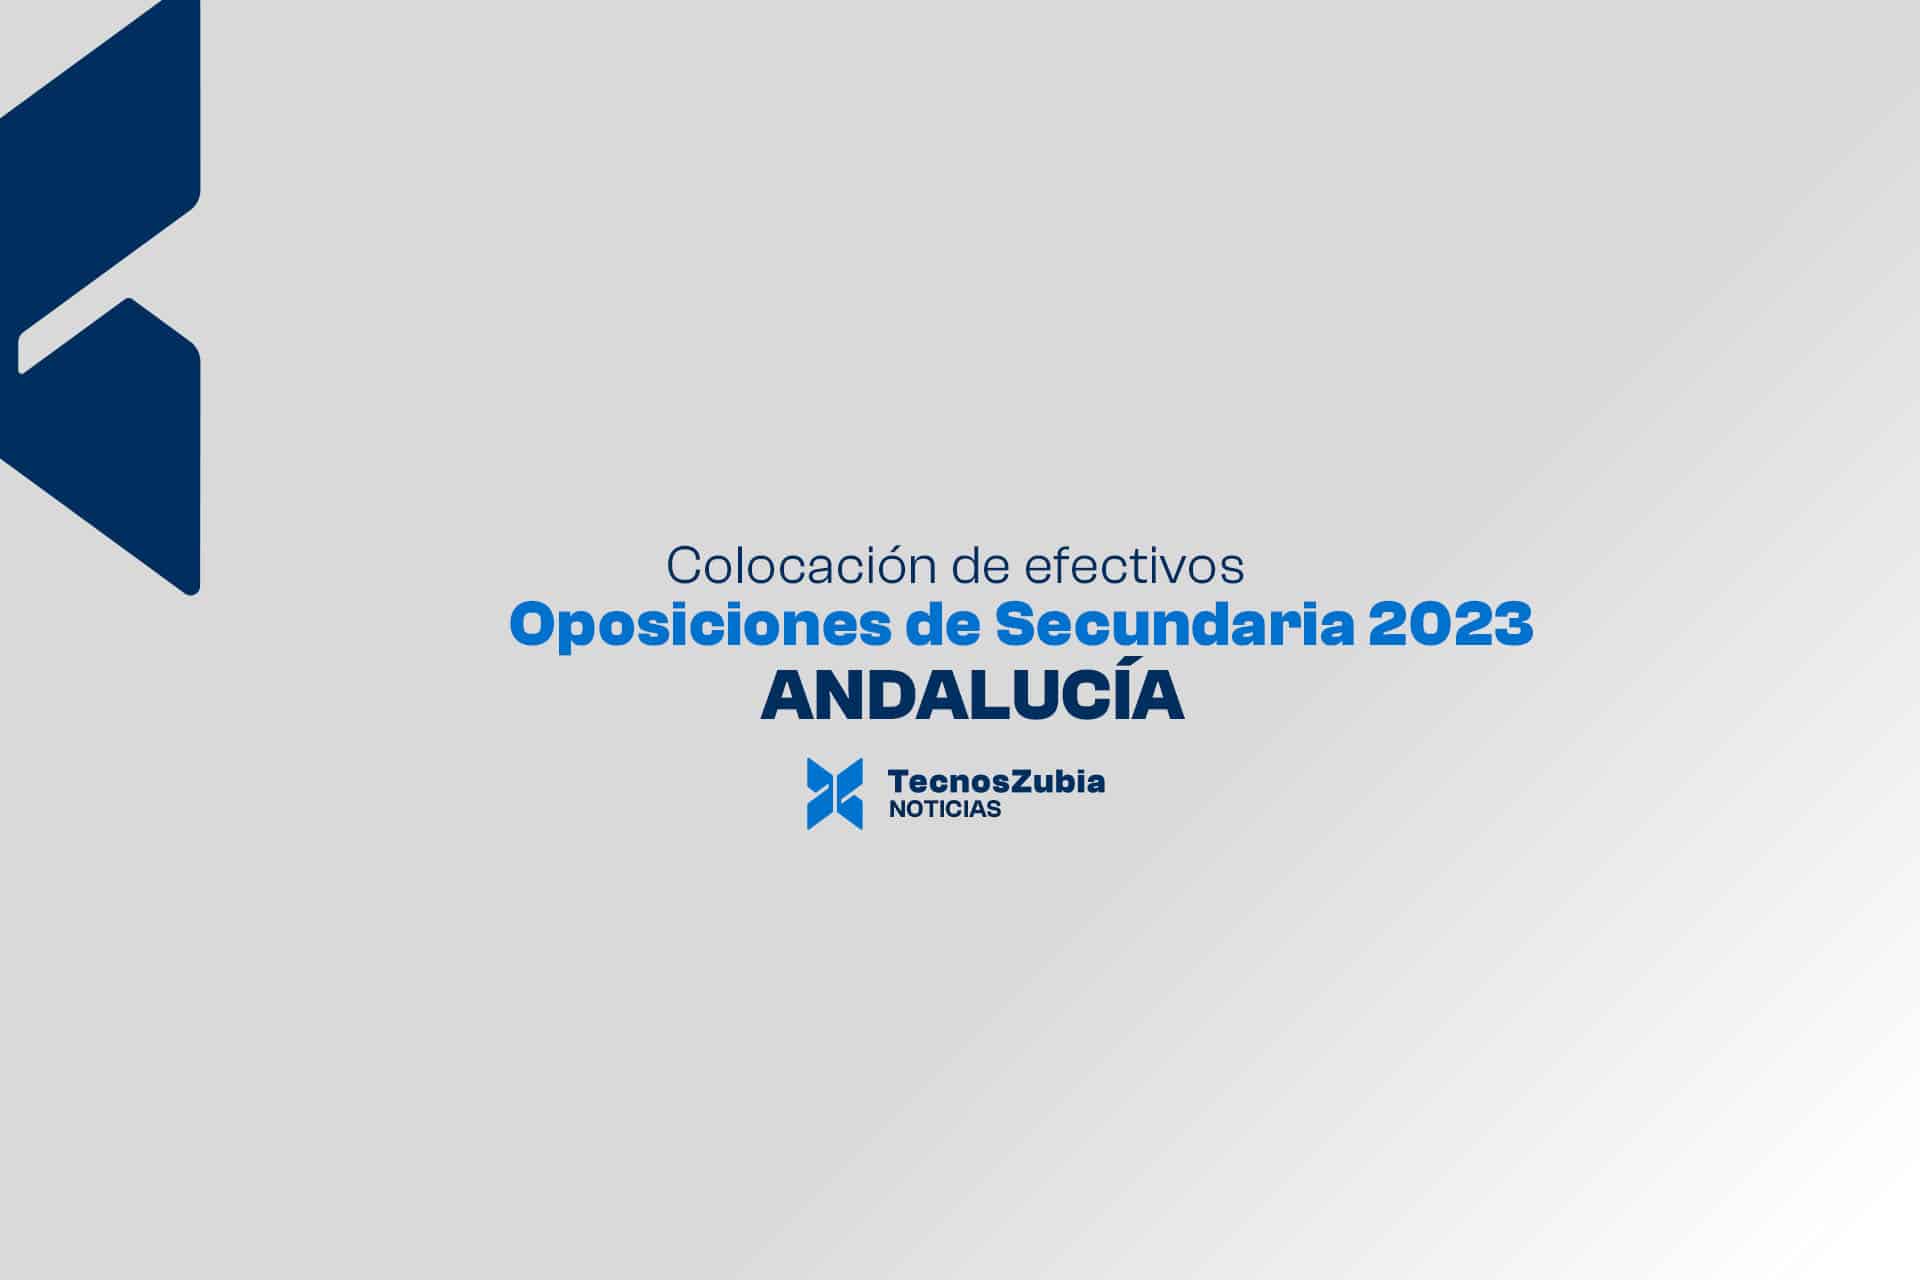 Colocación de efectivos. Oposiciones Andalucía de Secundaria 2023